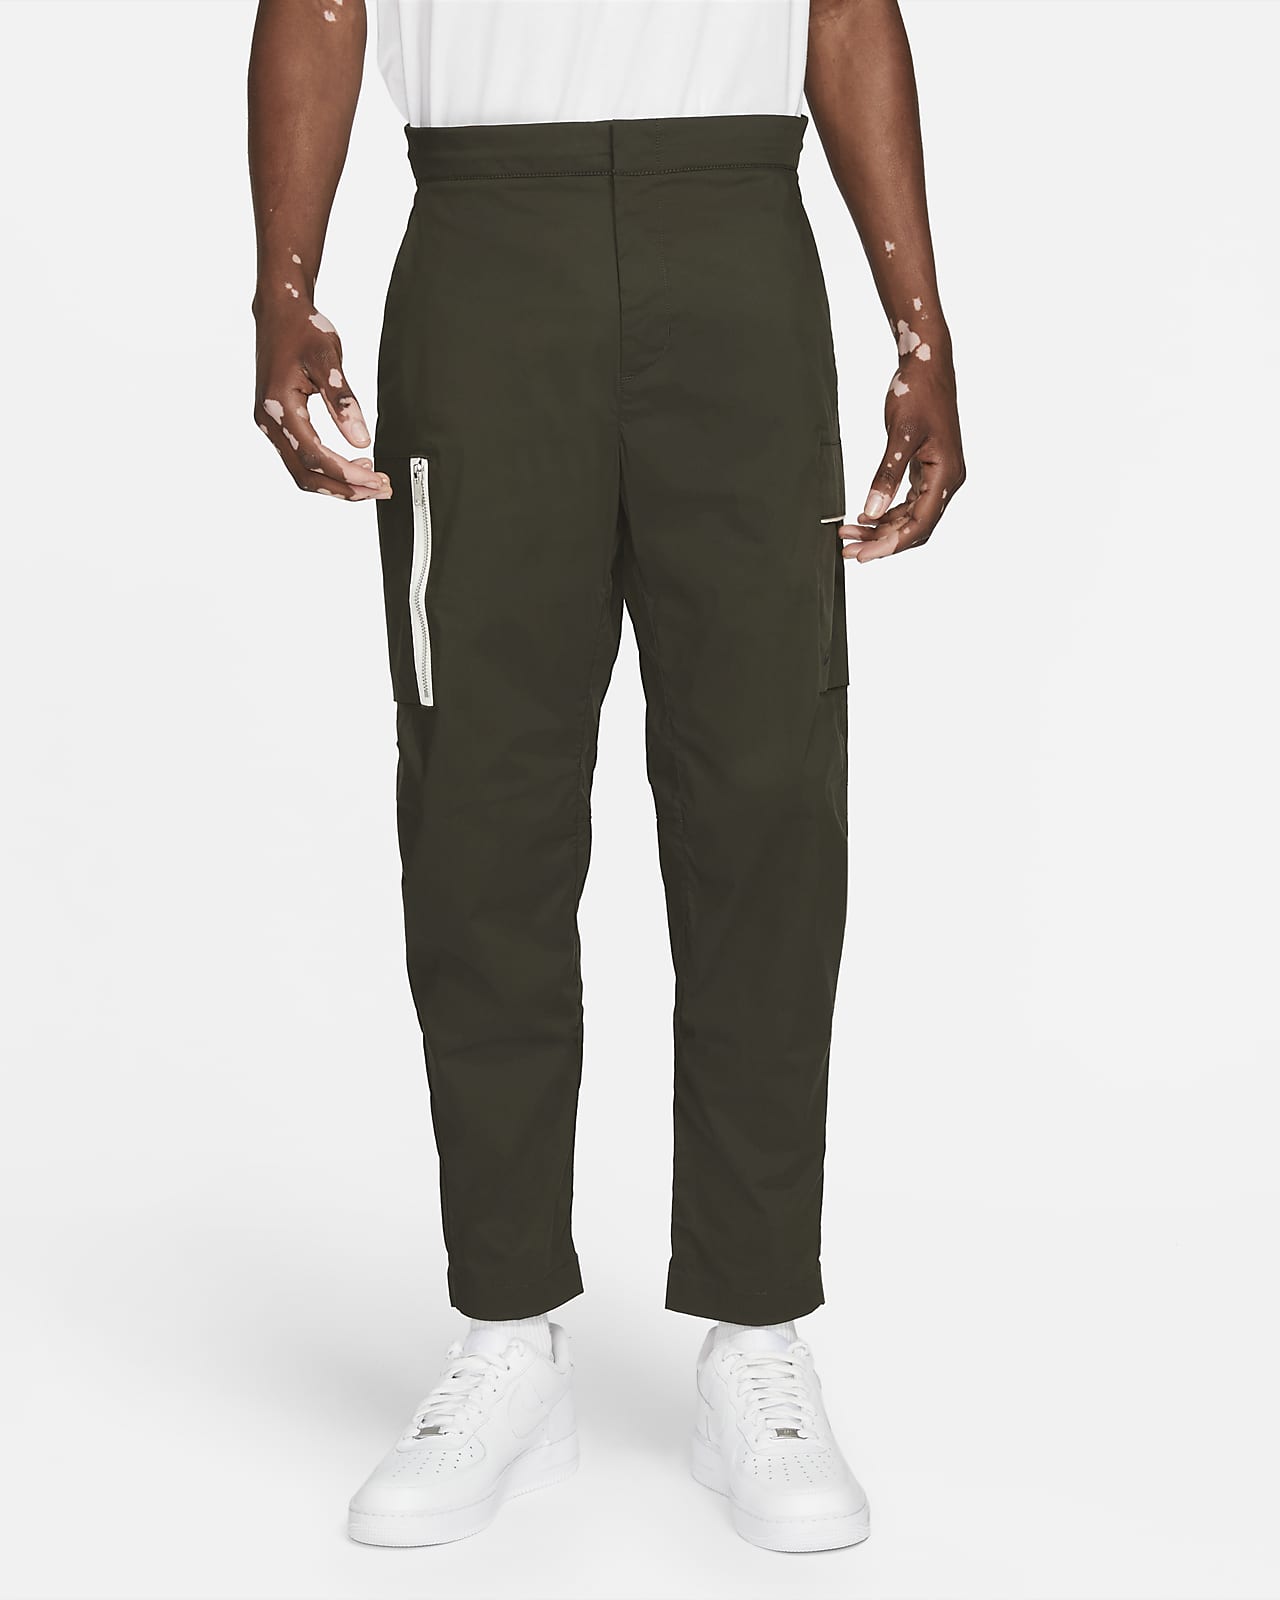 Nike Sportswear Style Essentials Men's Woven Unlined Cargo Trousers